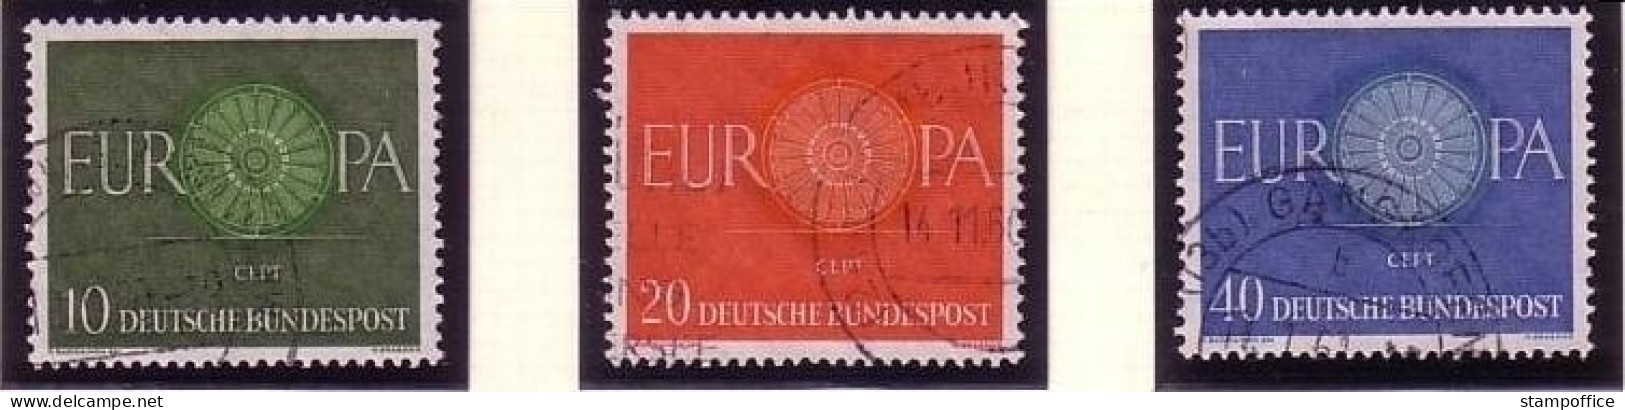 DEUTSCHLAND MI-NR. 337-339 GESTEMPELT(USED) EUROPA 1960 WAGENRAD - 1960